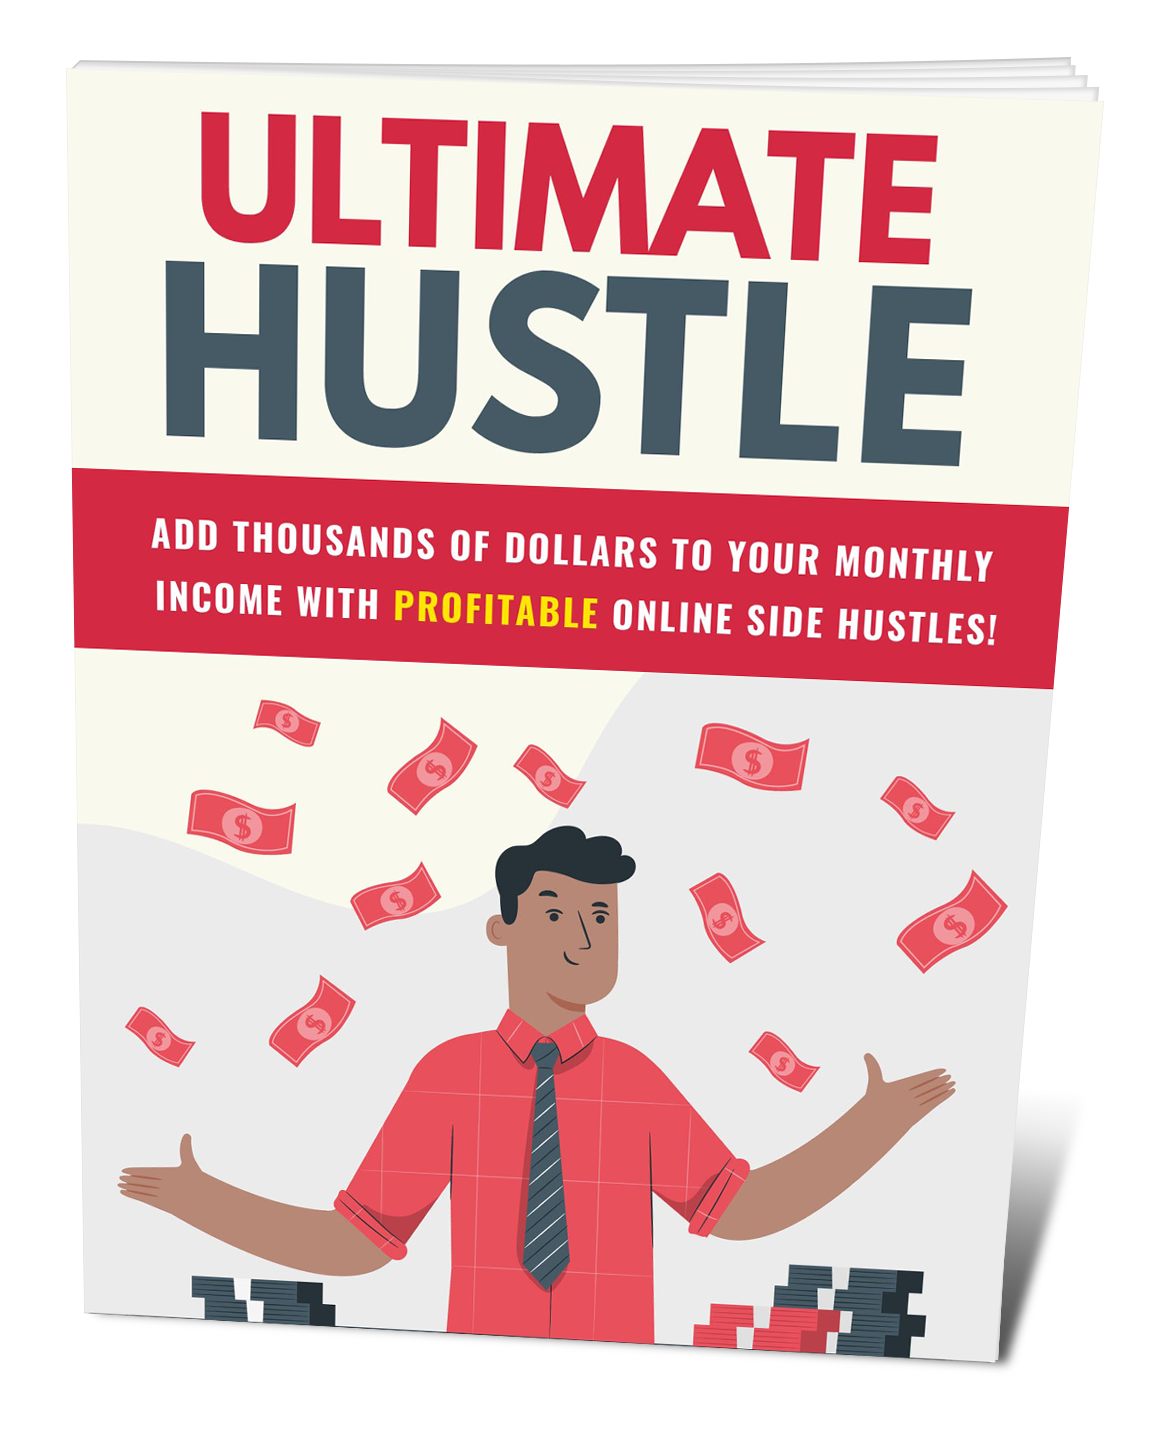 Ultimate Hustle